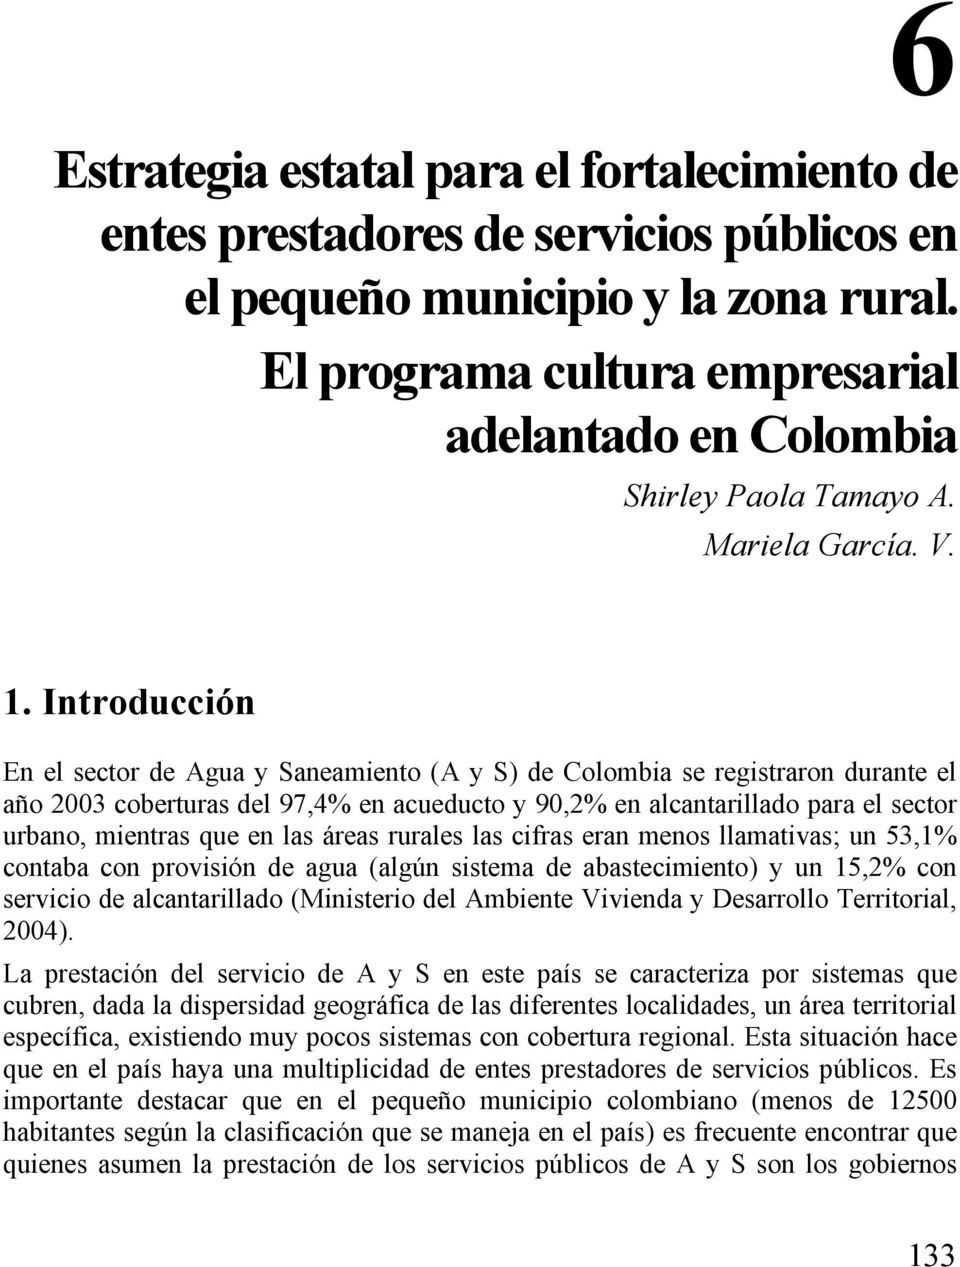 Introducción En el sector de Agua y Saneamiento (A y S) de Colombia se registraron durante el año 2003 coberturas del 97,4% en acueducto y 90,2% en alcantarillado para el sector urbano, mientras que